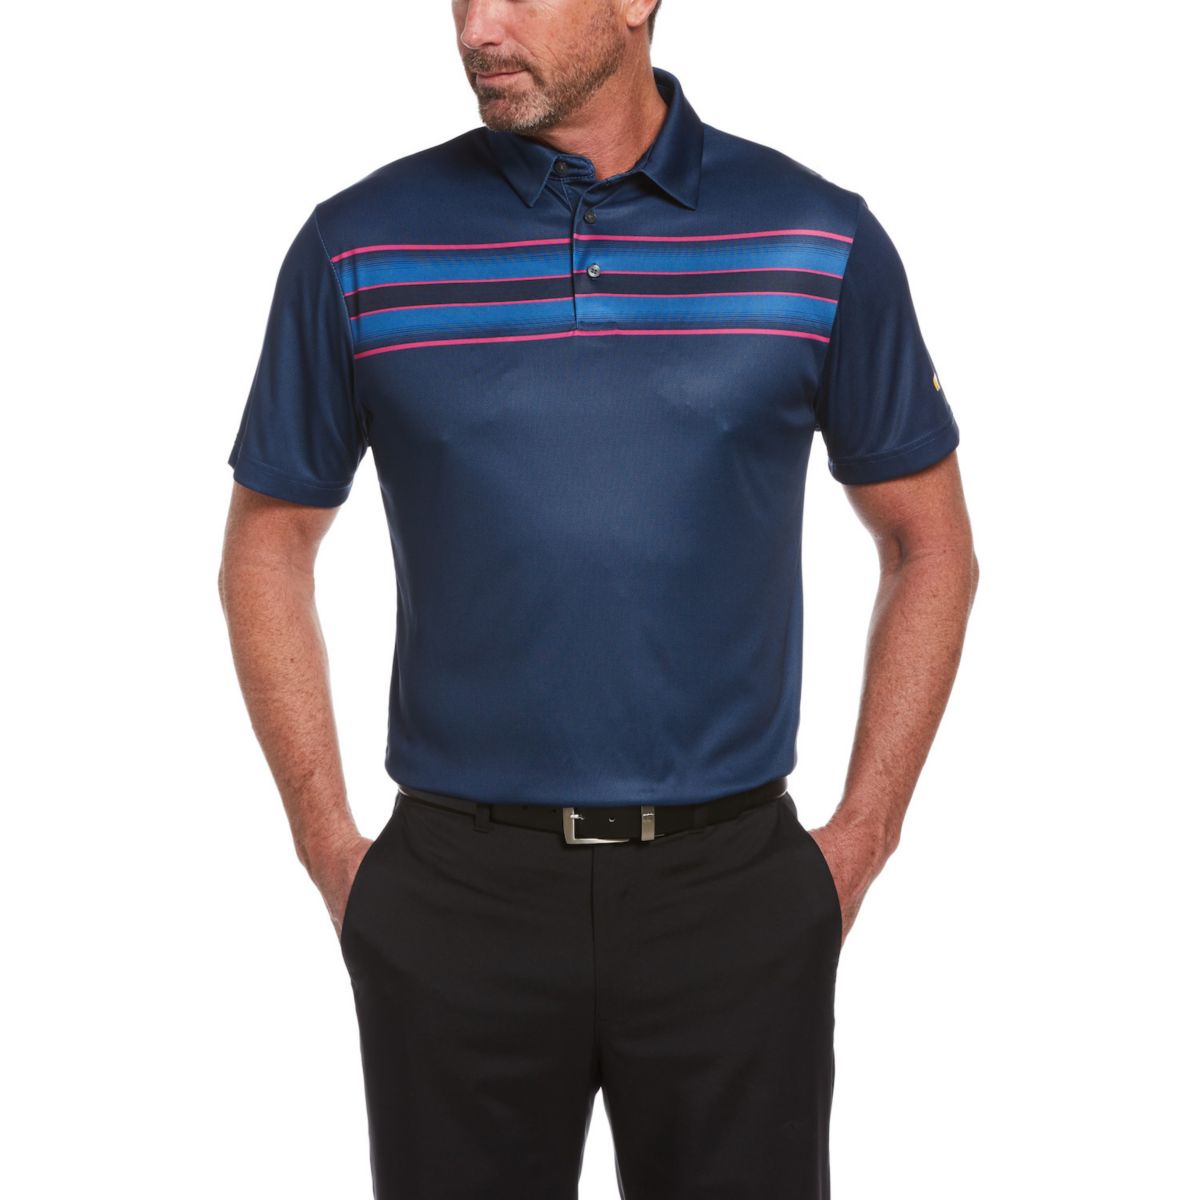 Мужская рубашка-поло для гольфа в полоску классического кроя Jack Nicklaus StayDri Driver для гольфа Performance Jack Nicklaus